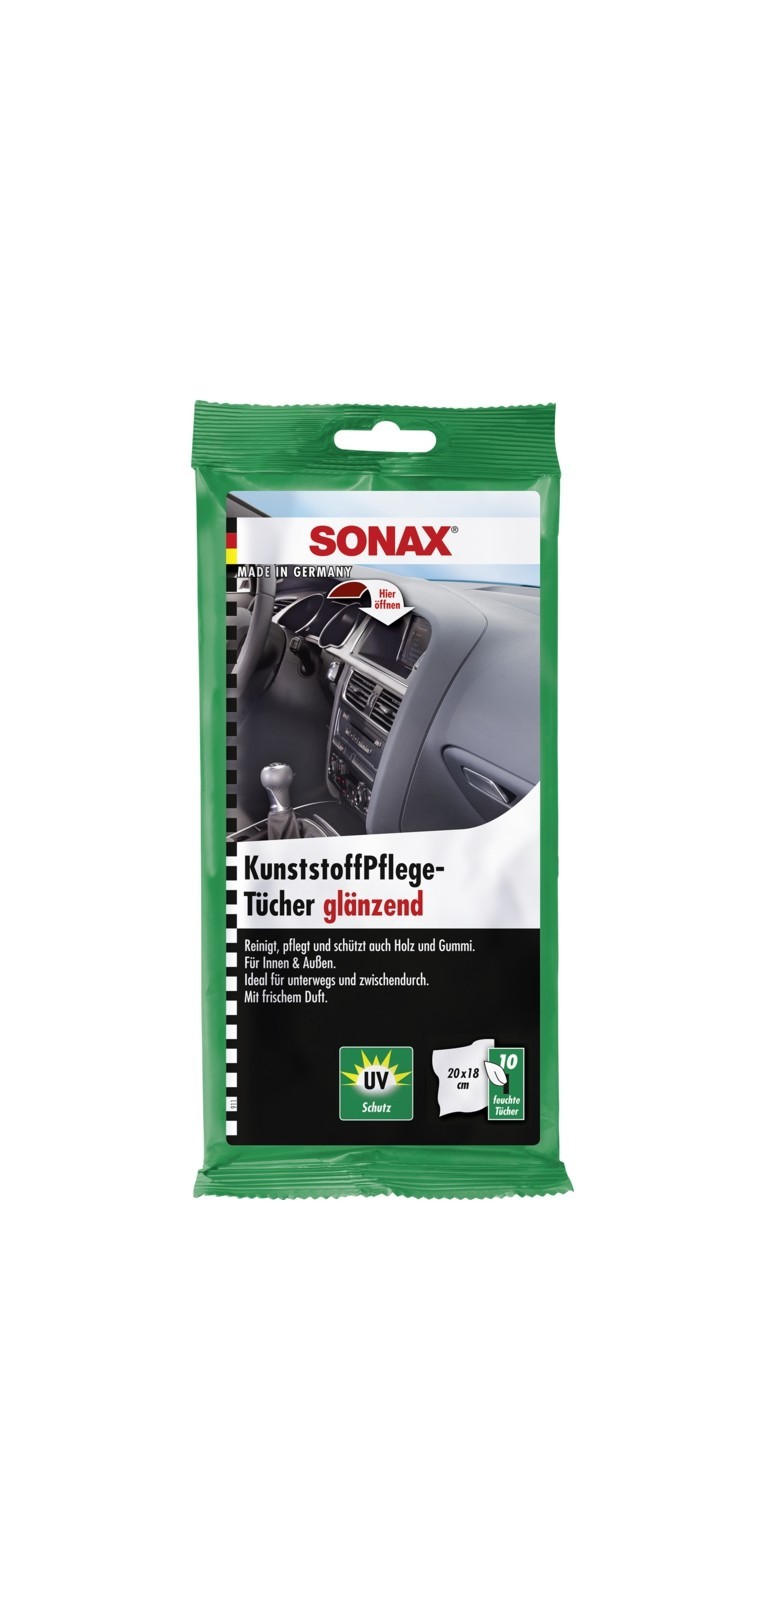 SONAX Kunststoffpflegemittel KunststoffPflegeTücher glänzend 0,05 L (04151000)